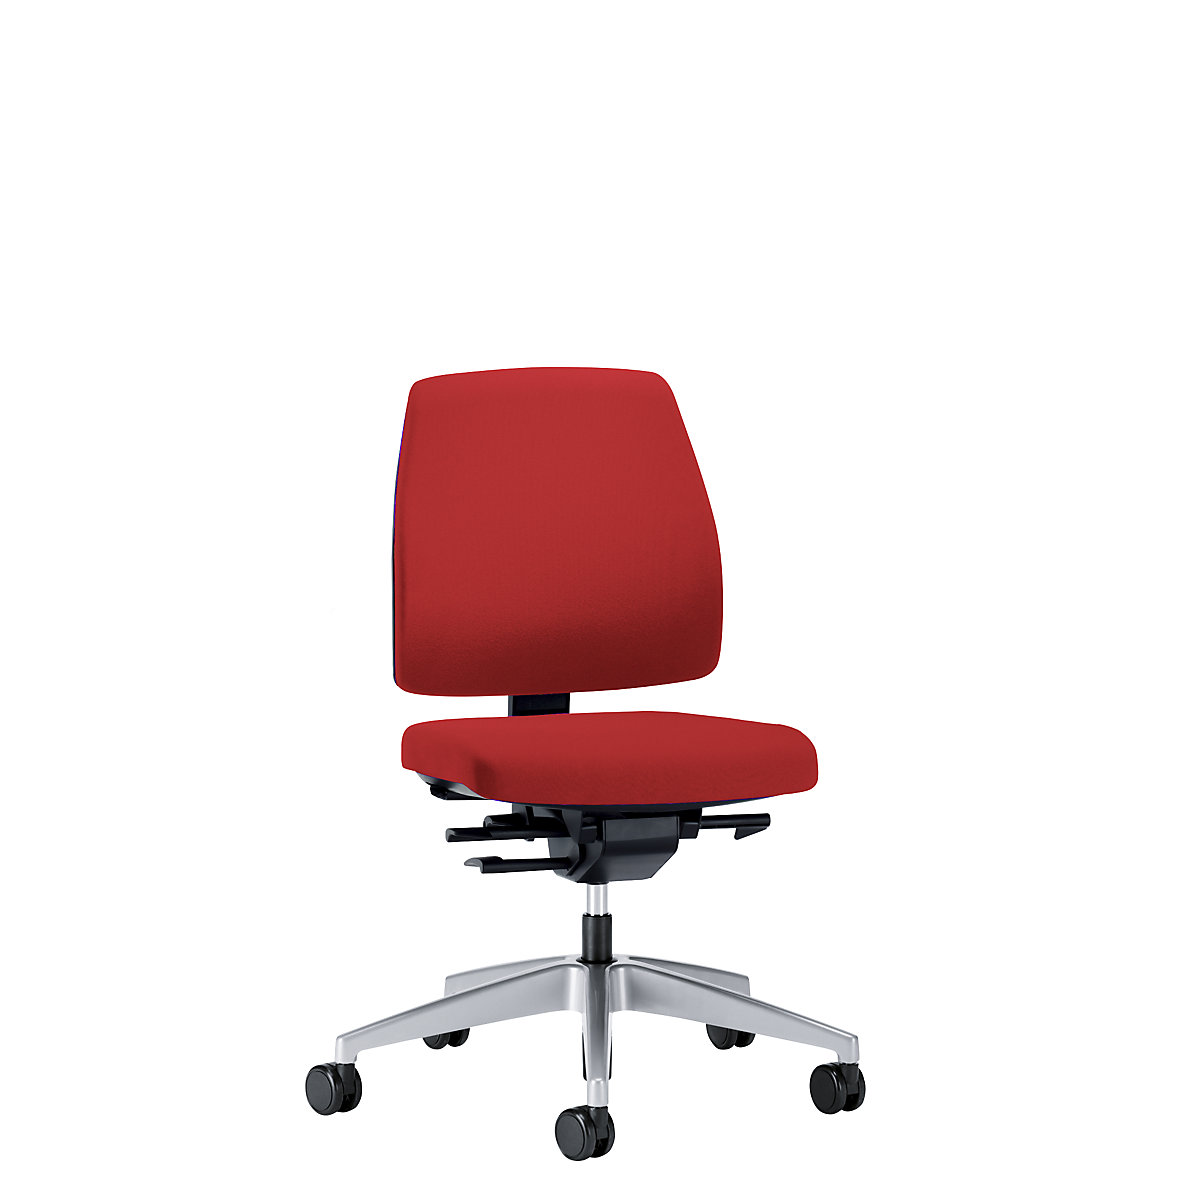 Sedia girevole per ufficio GOAL, altezza schienale 430 mm – interstuhl, telaio argento brillante, con rotelle dure, rosso fuoco, profondità sedile 410 mm-5